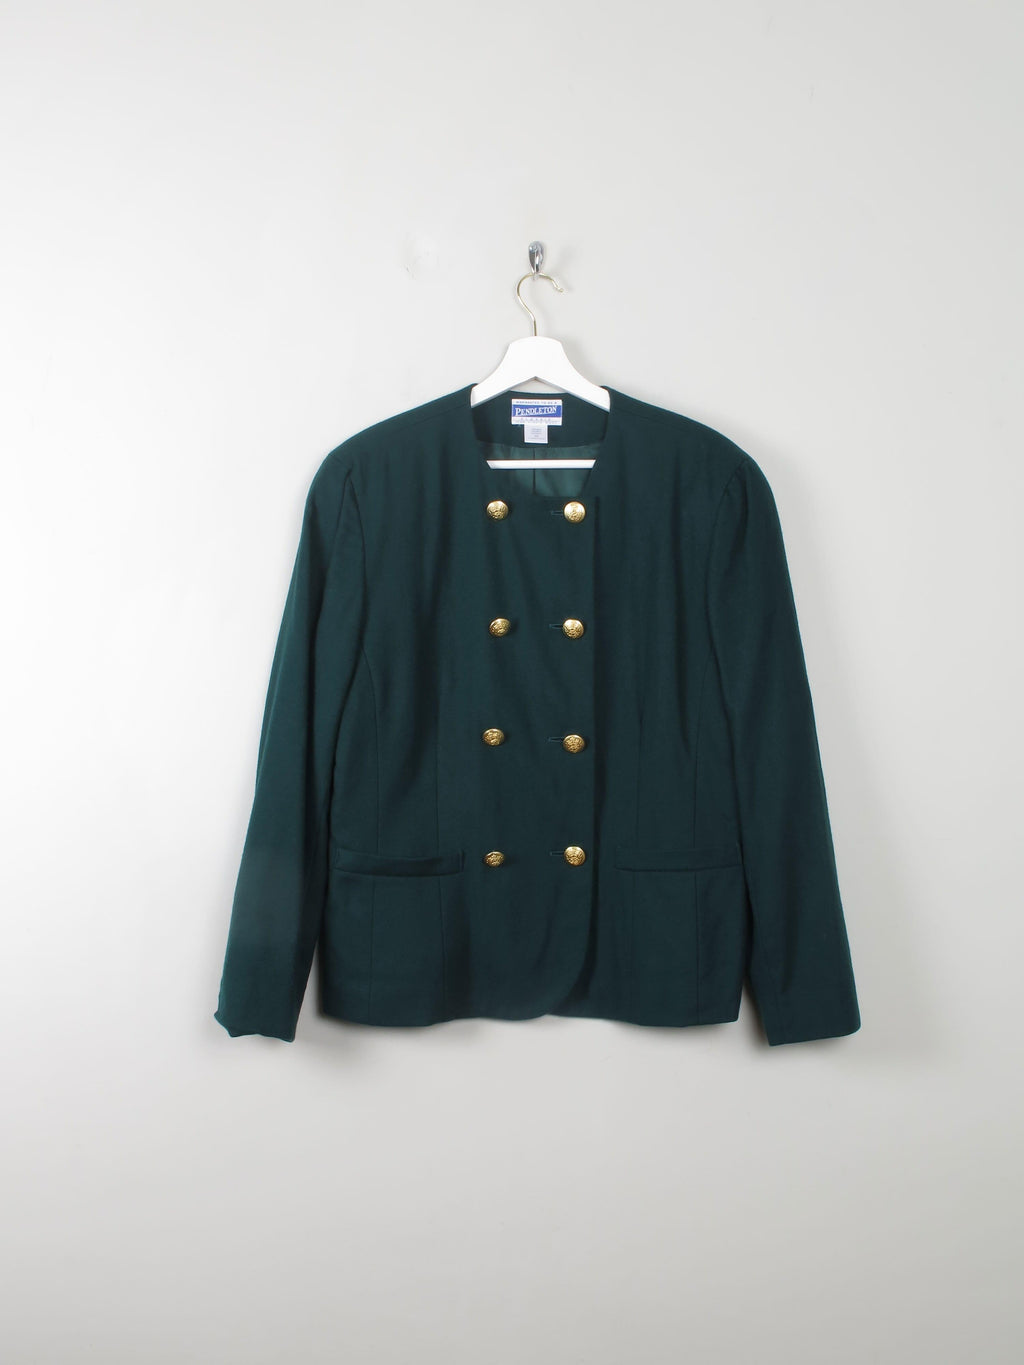 Women's Green Vintage Pendleton Jacket L - The Harlequin